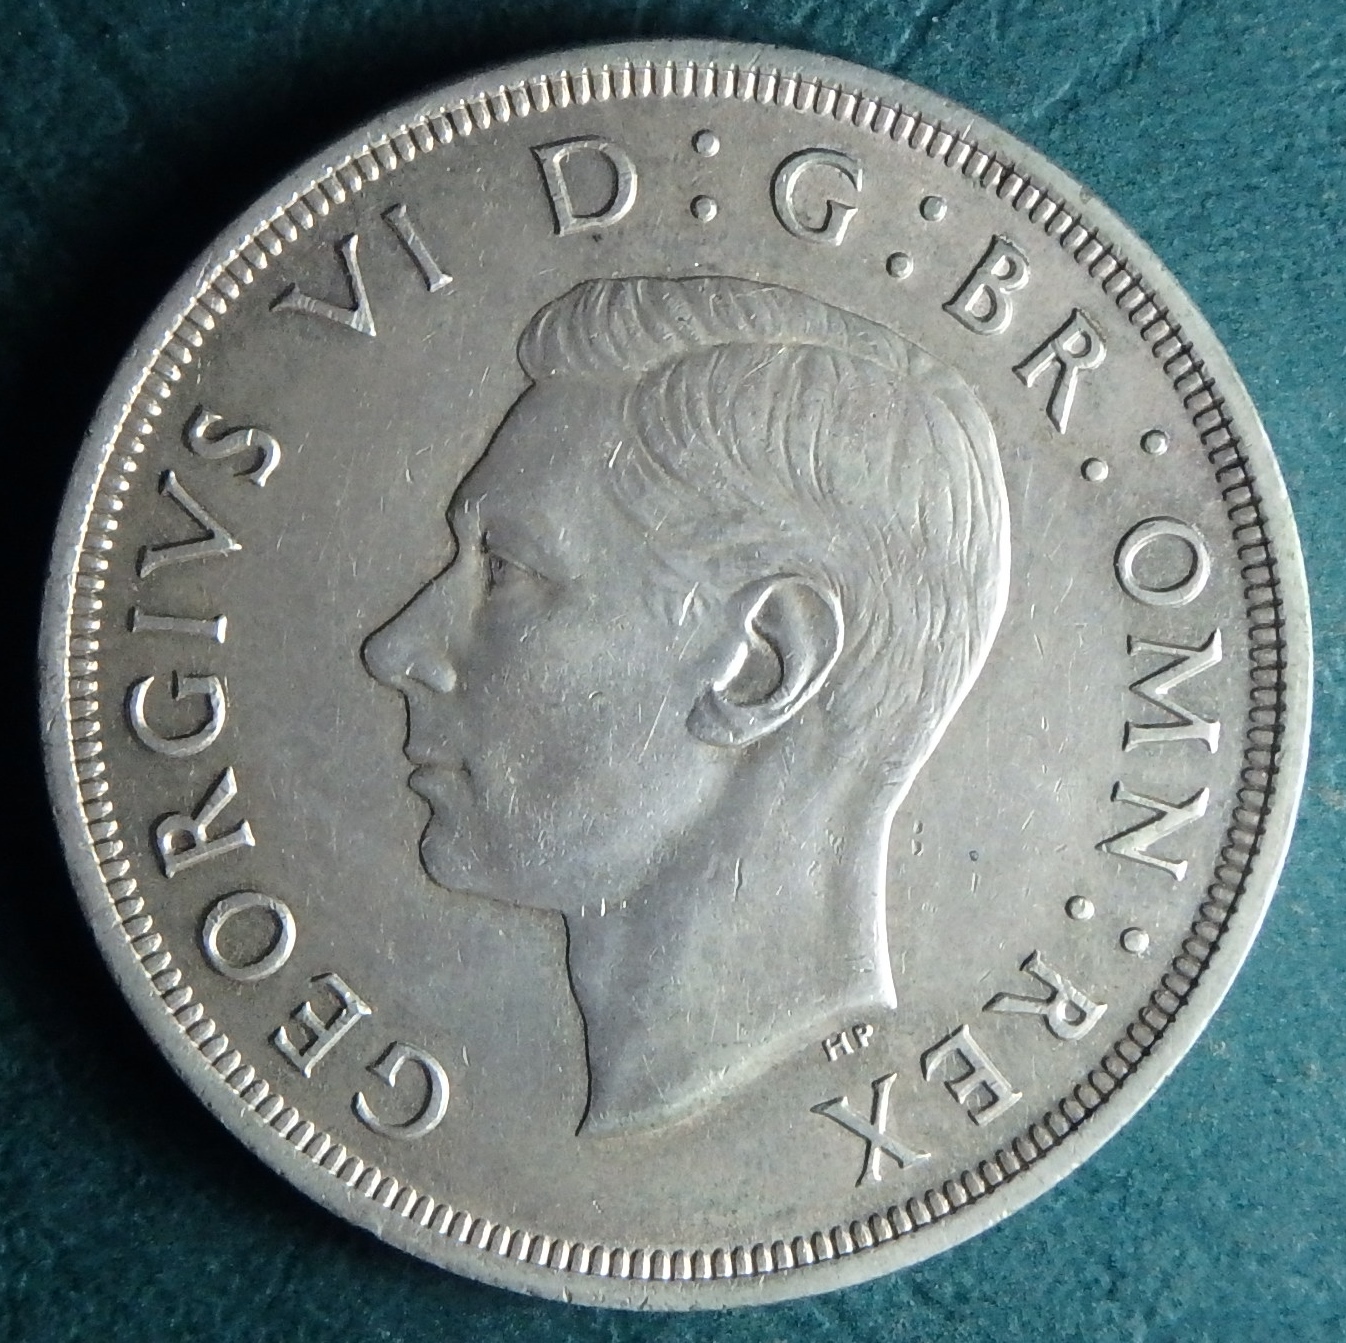 1937 GB 1 crown obv.JPG